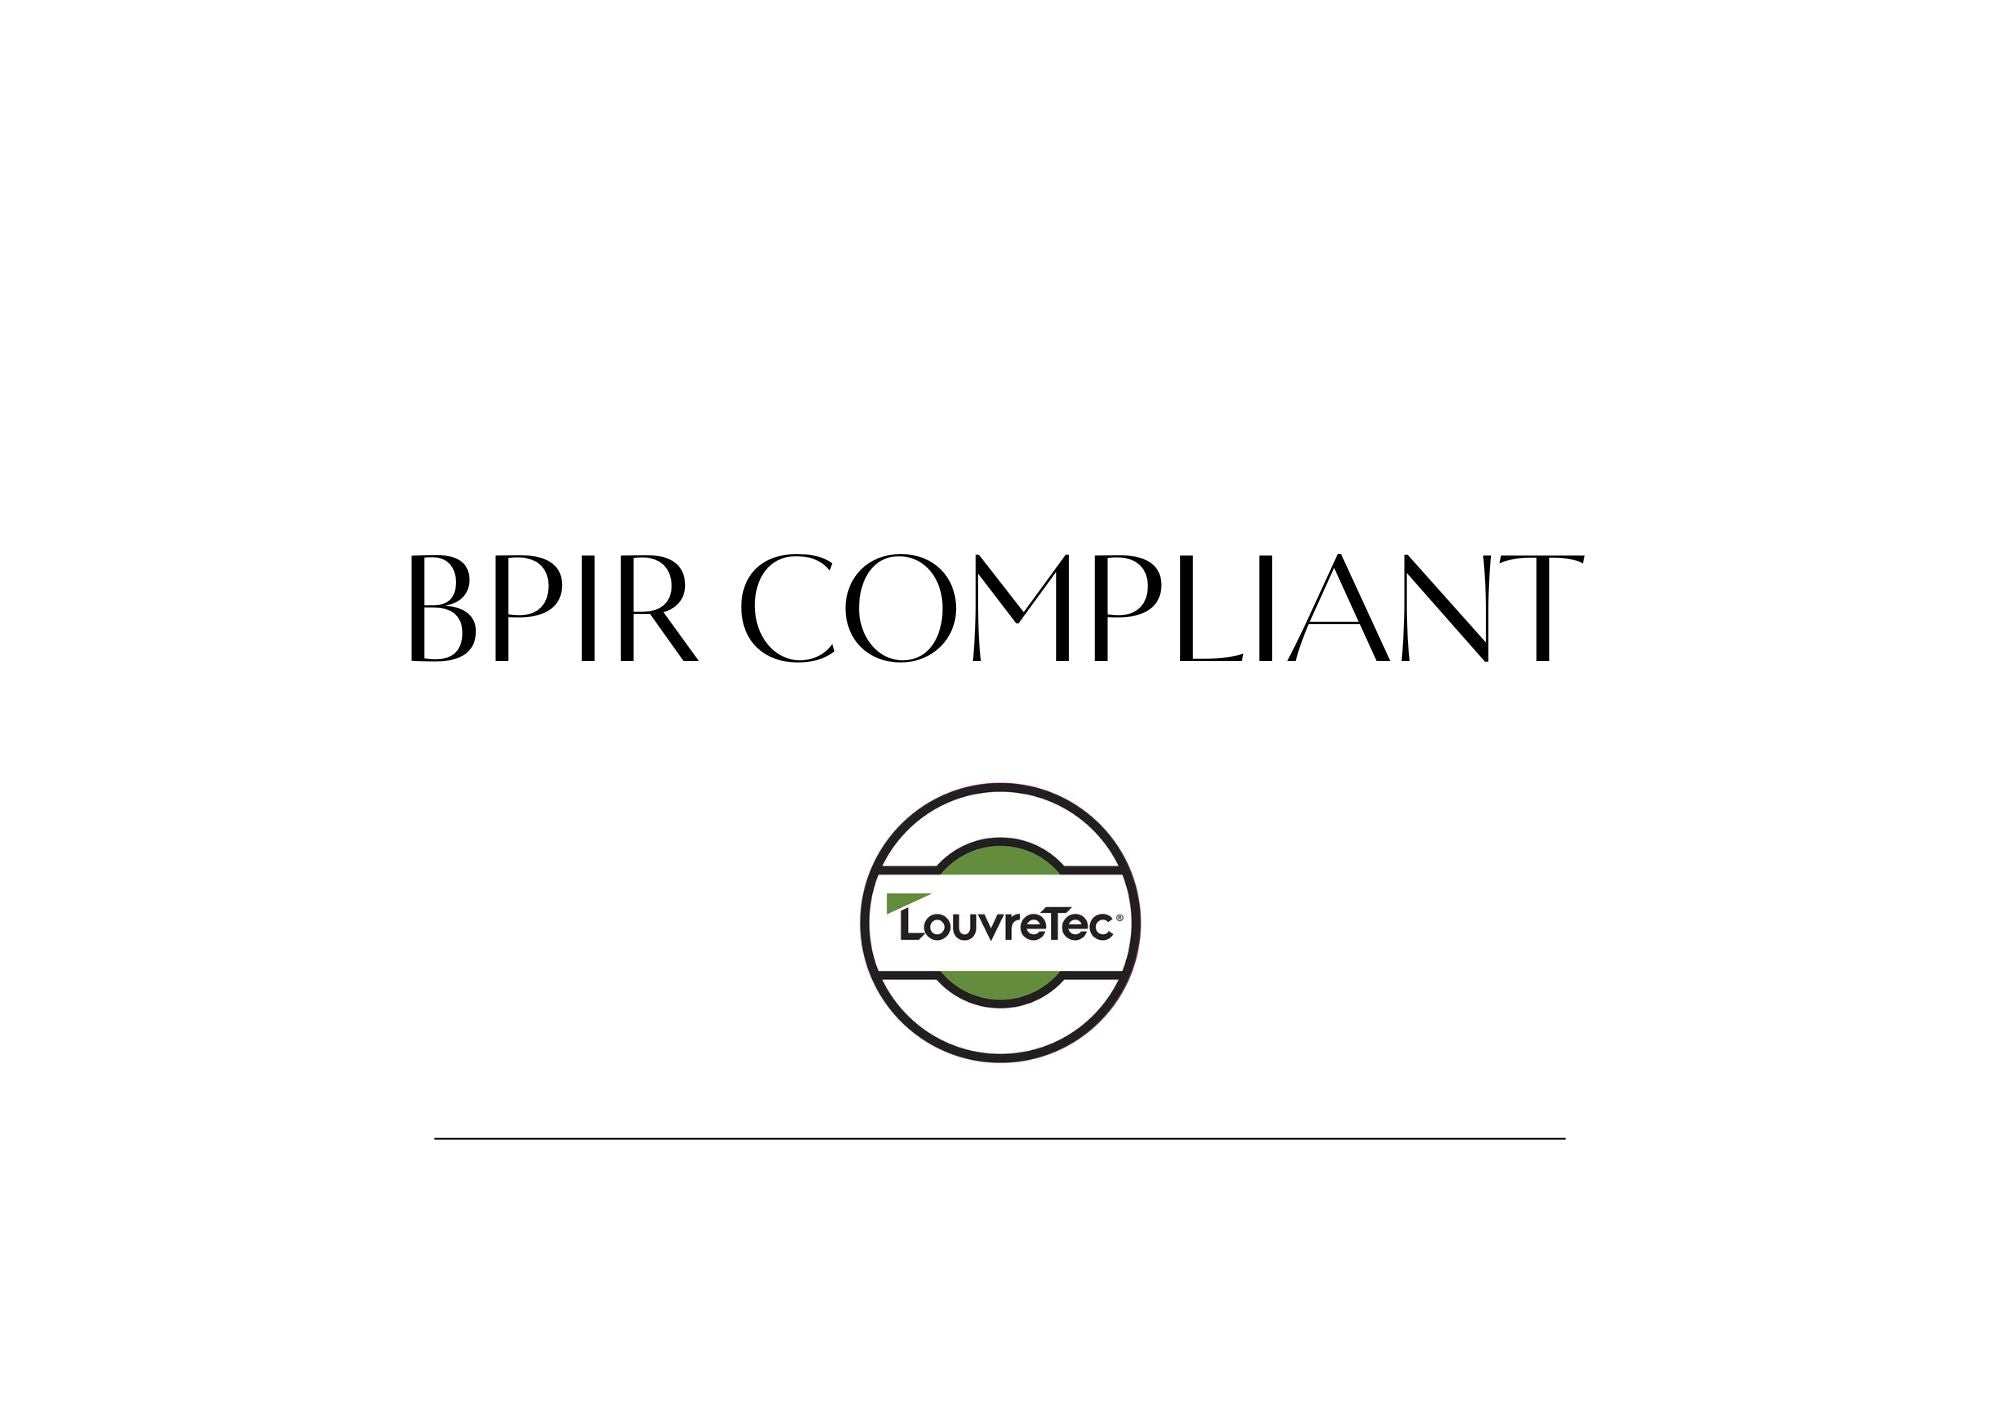 BPIR Compliant